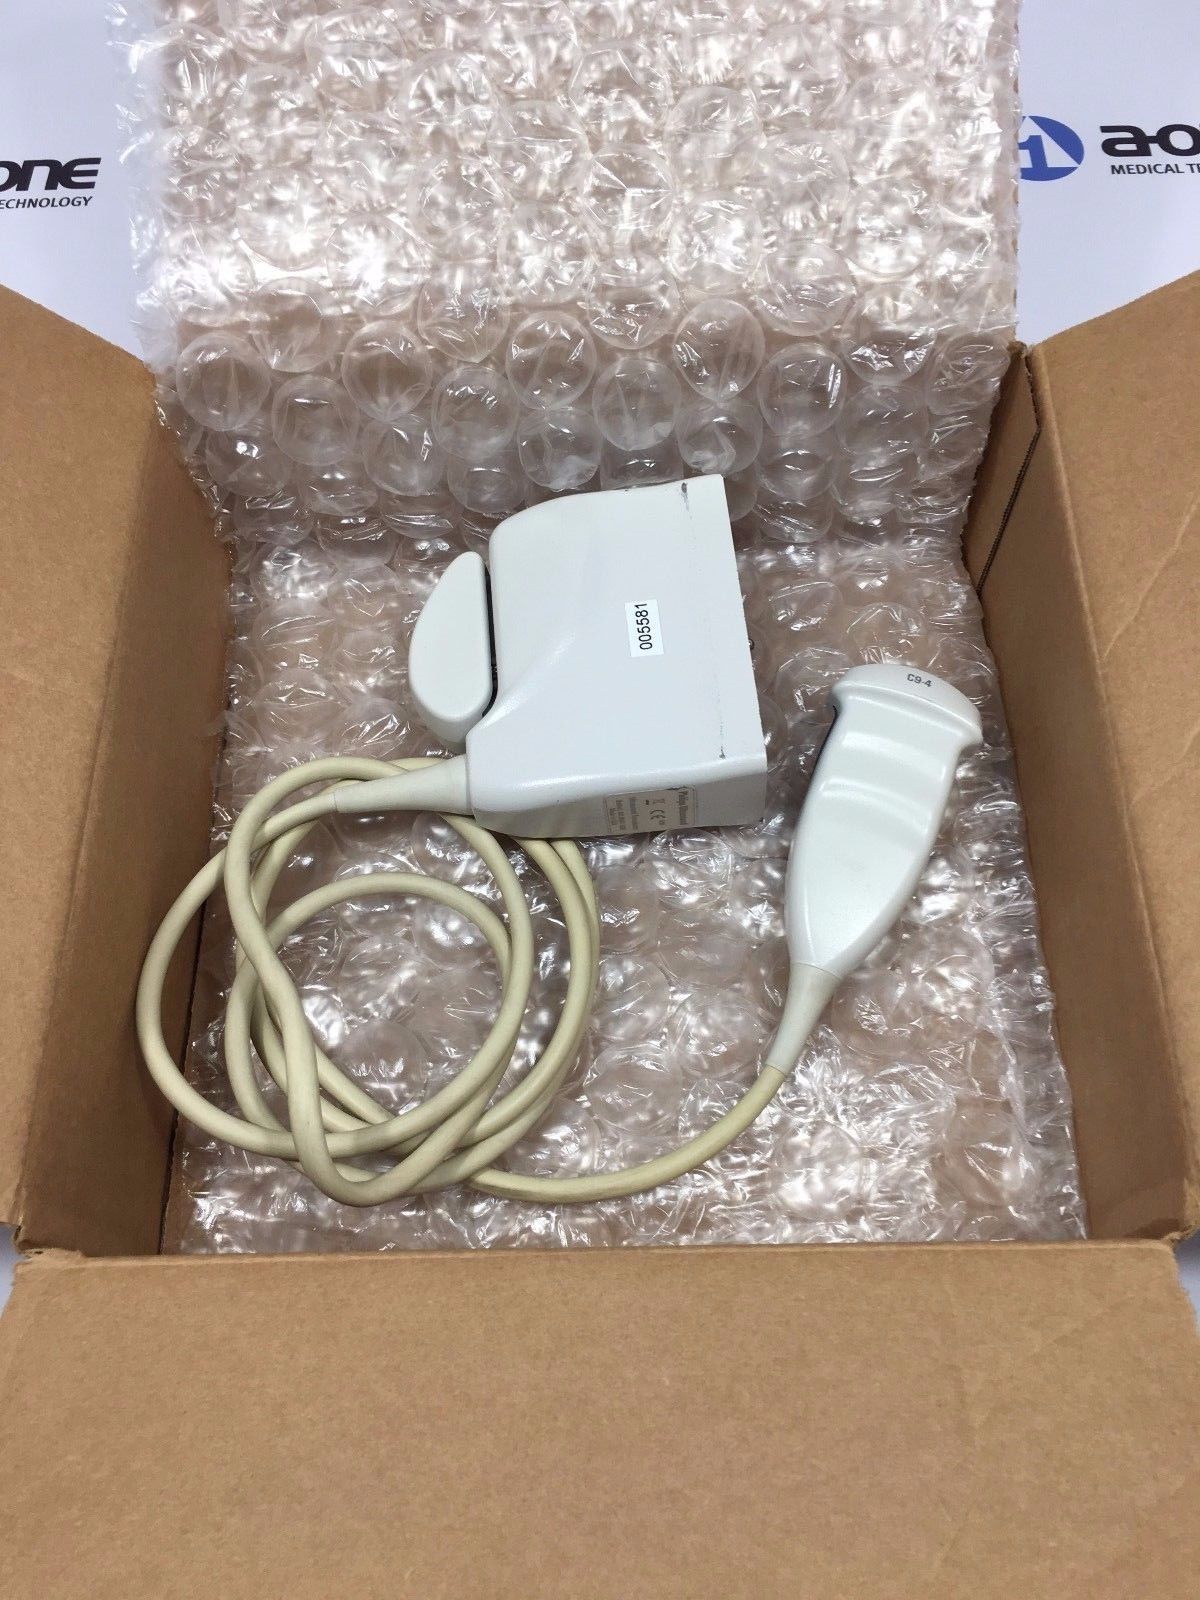 probe in cardboard box